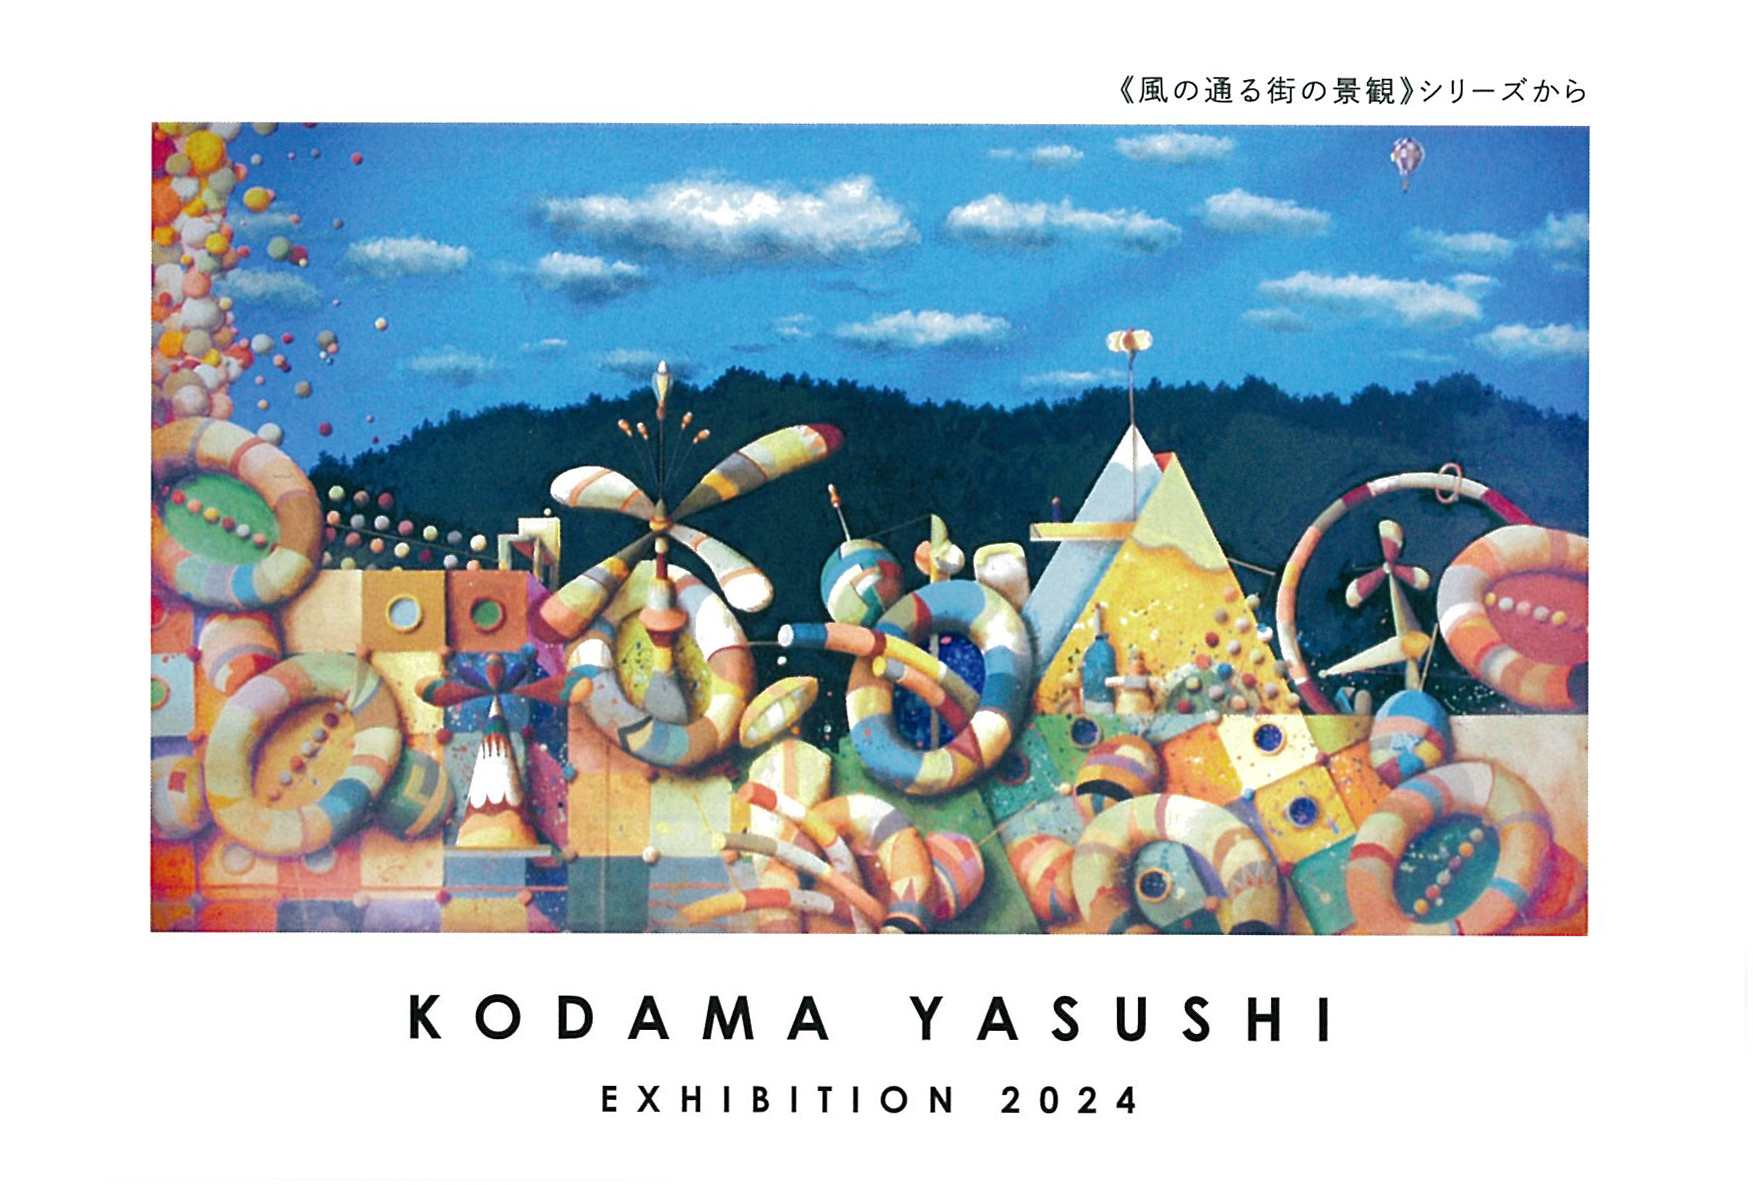 KODAMA YASUSHI EXHIBITION 2024